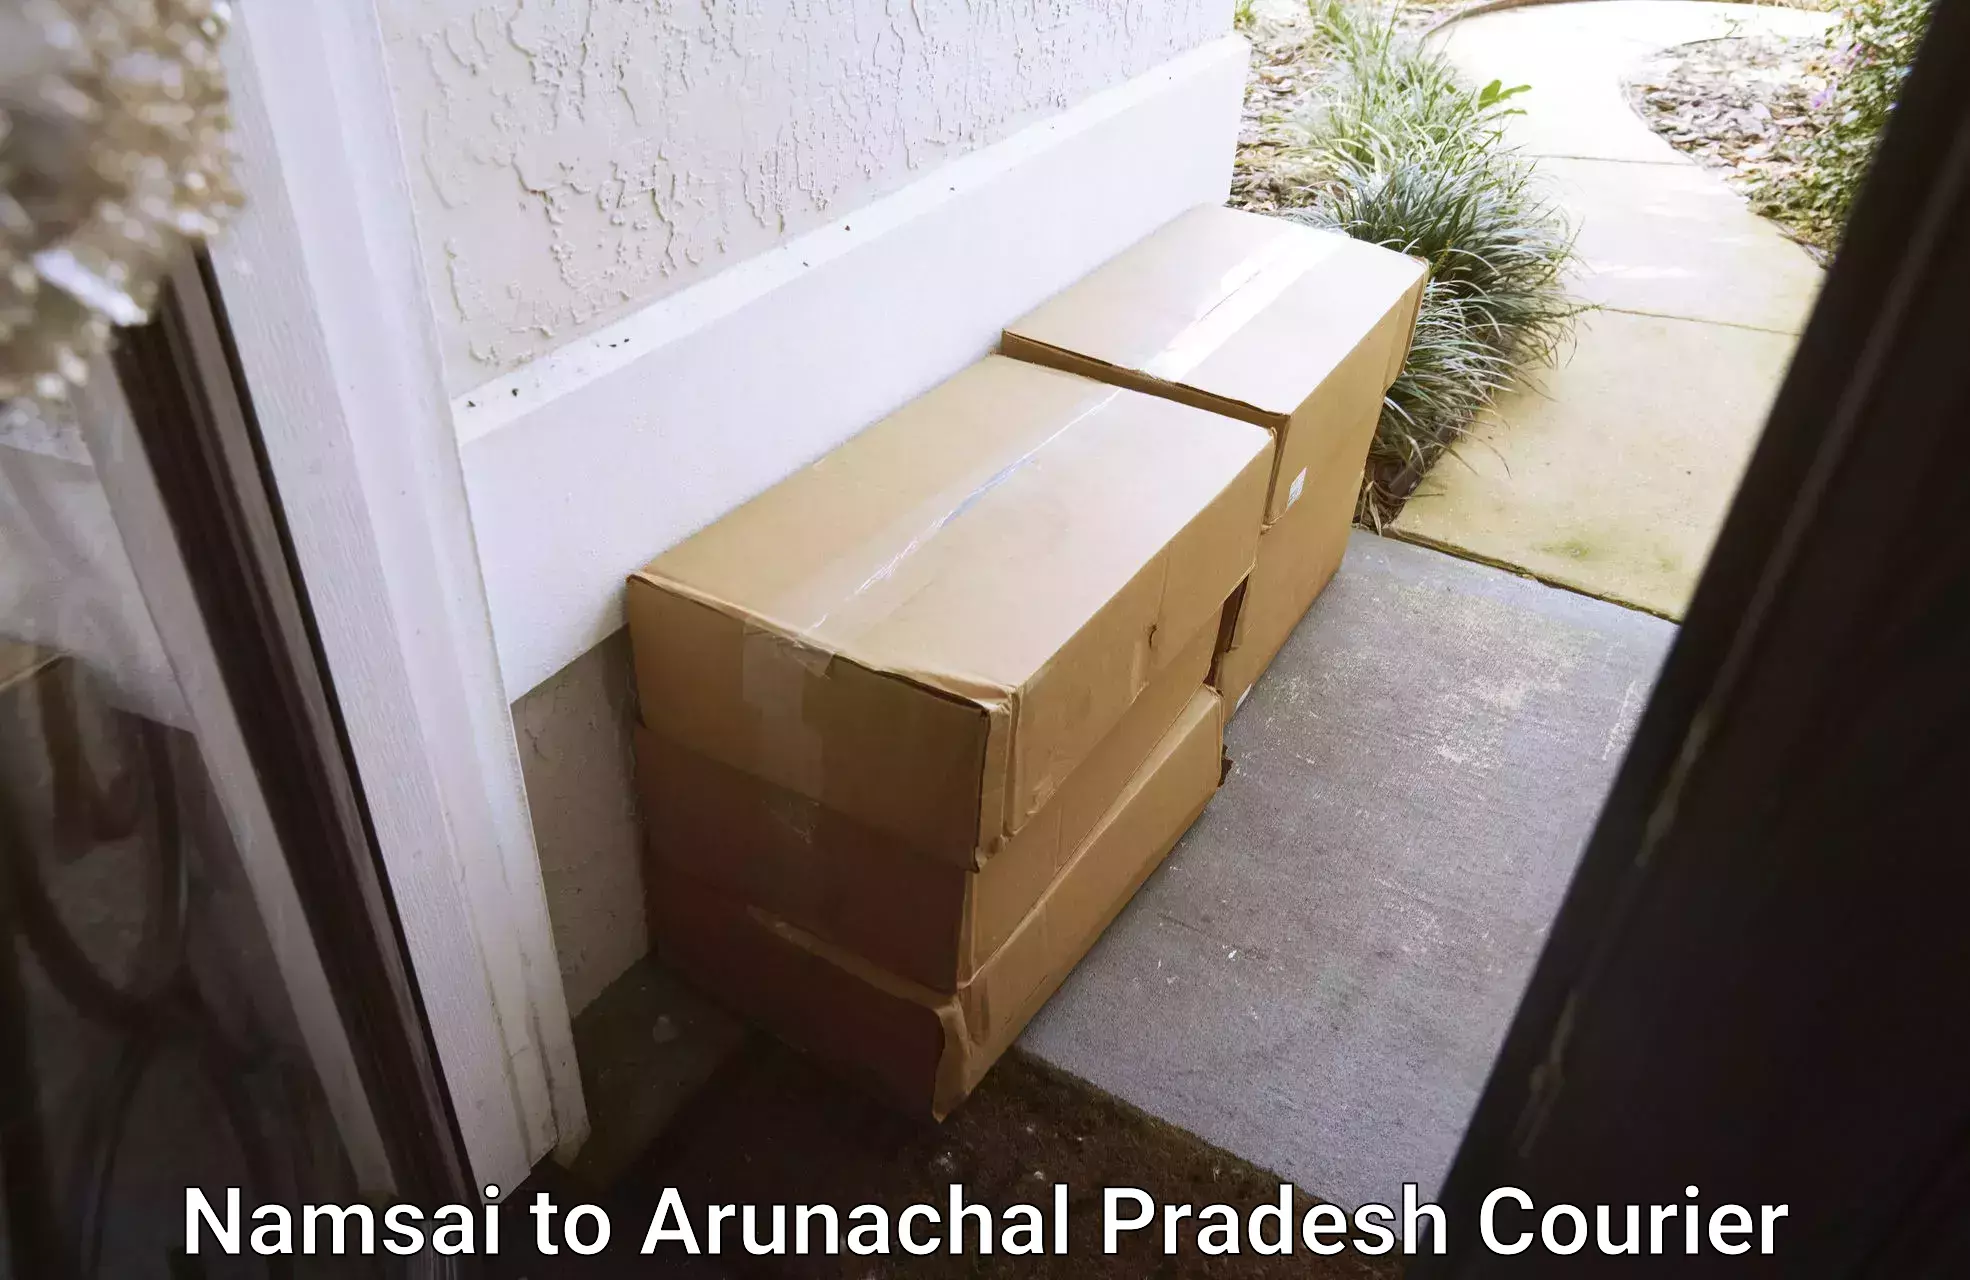 Pharmaceutical courier Namsai to Naharlagun